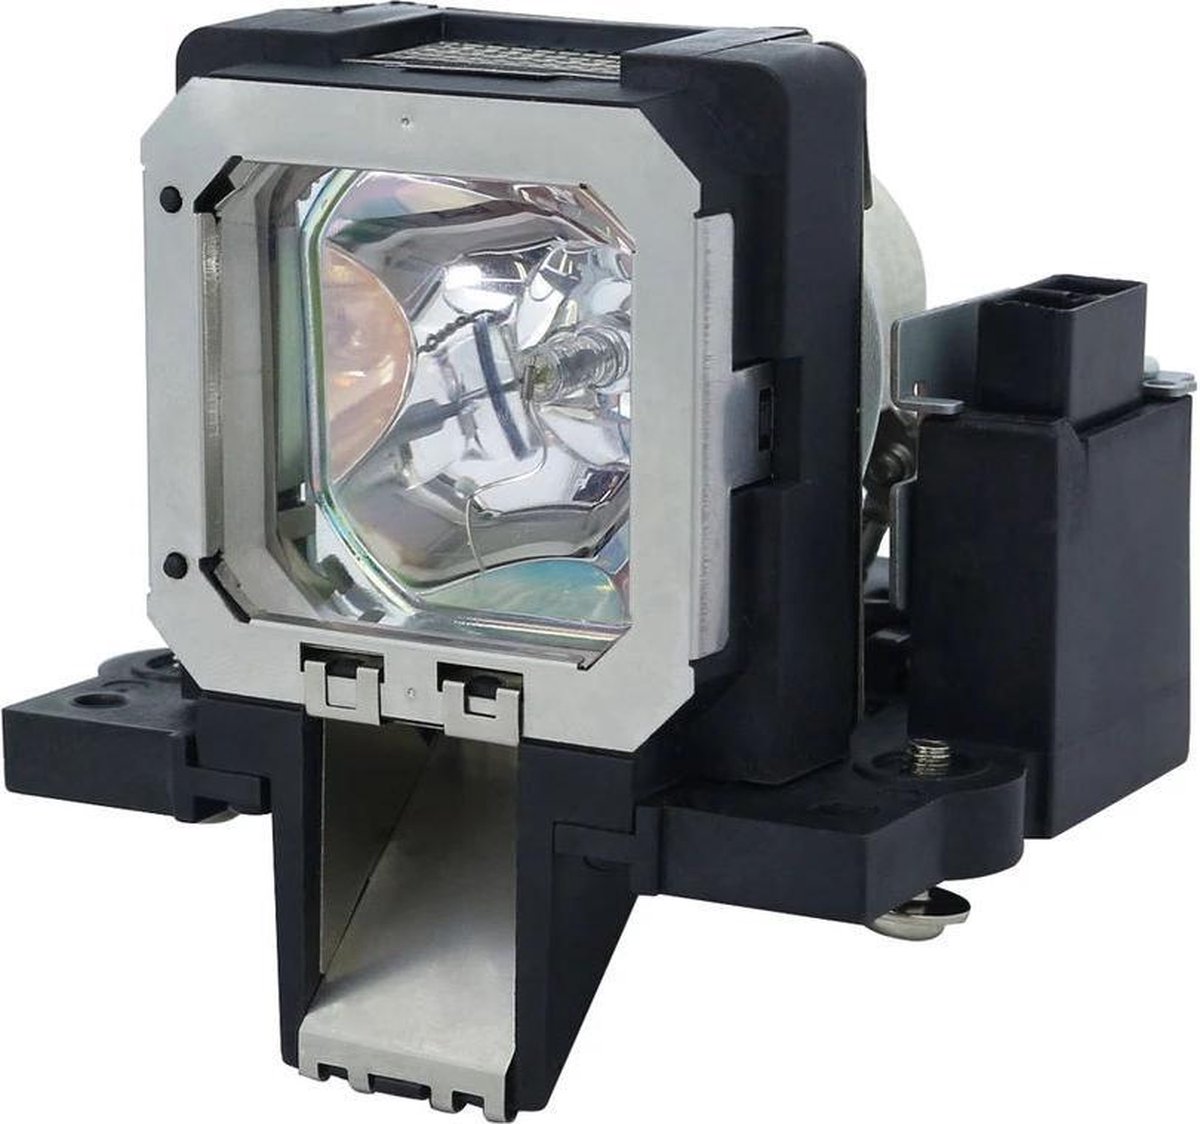 Beamerlamp geschikt voor de JVC DLA-RS60 beamer, lamp code PK-L2210UP. Bevat originele NSHA lamp, prestaties gelijk aan origineel.